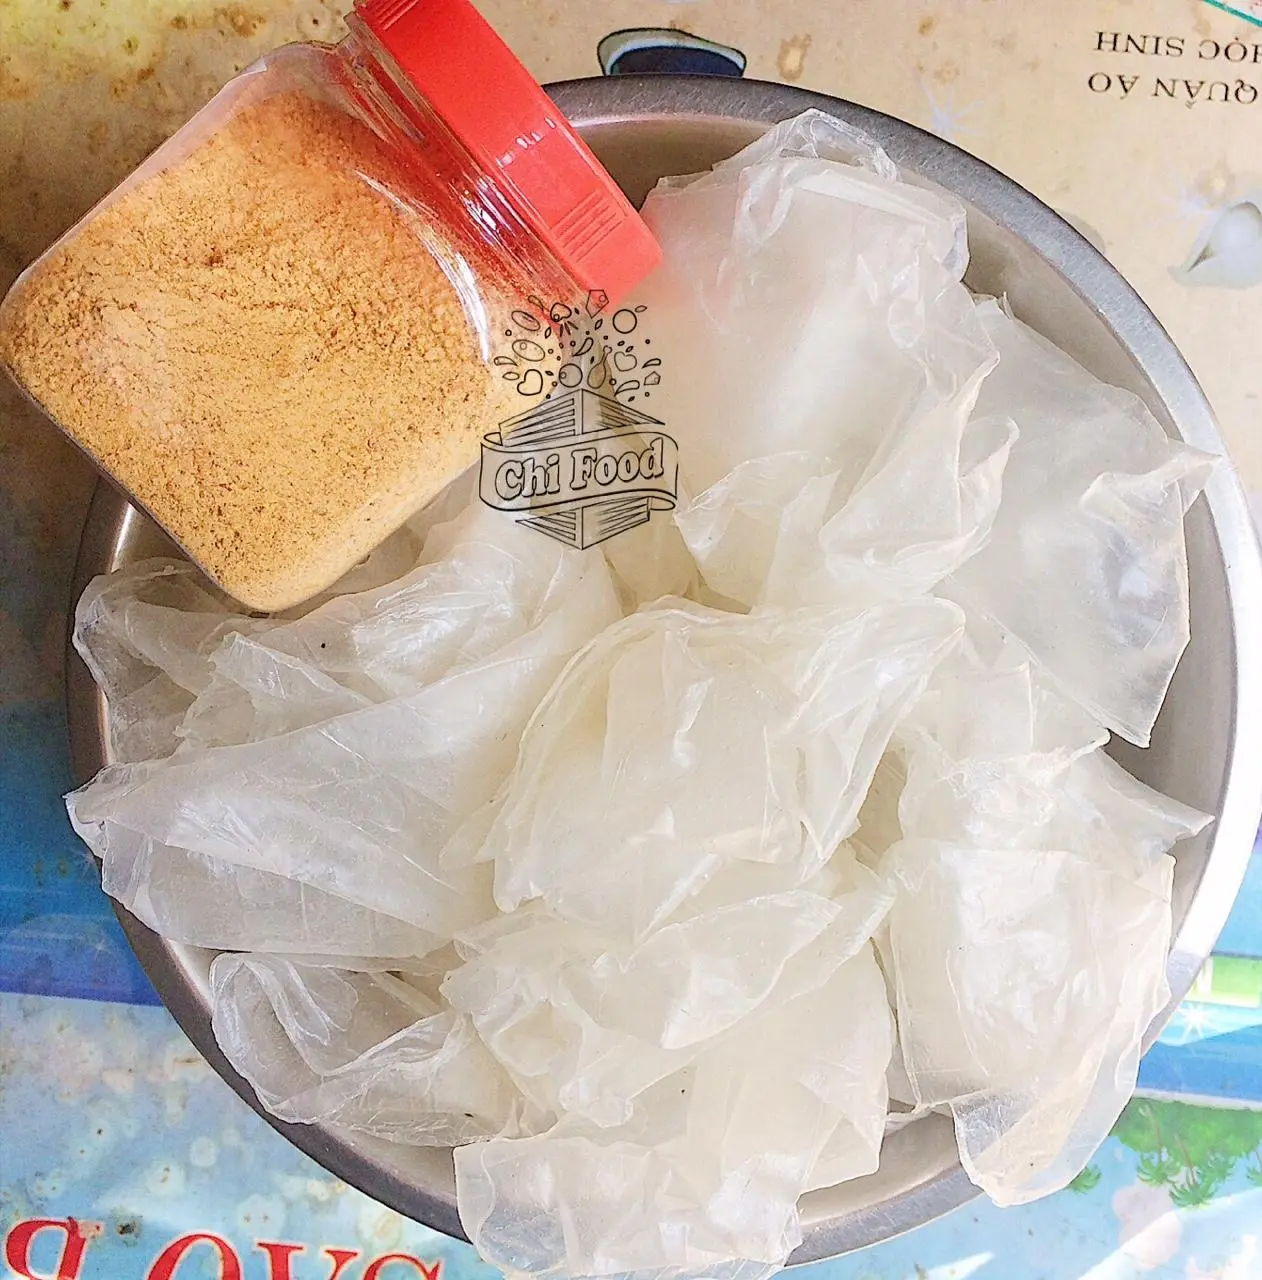 Bánh tráng phơi sương muối nhuyễn set [580g] - chính gốc Tây Ninh